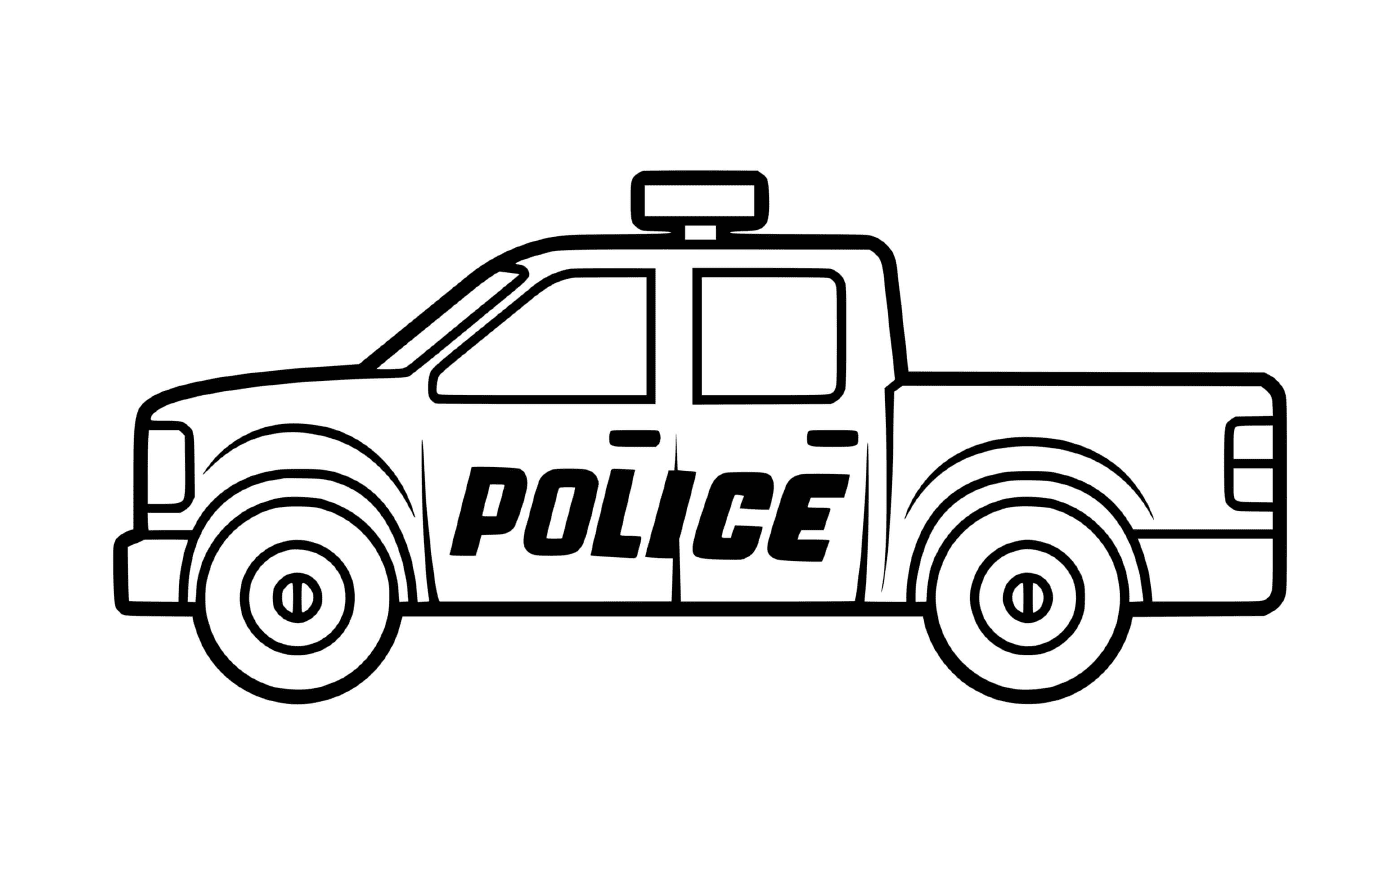  4x4 gendarmerie, veículo policial 